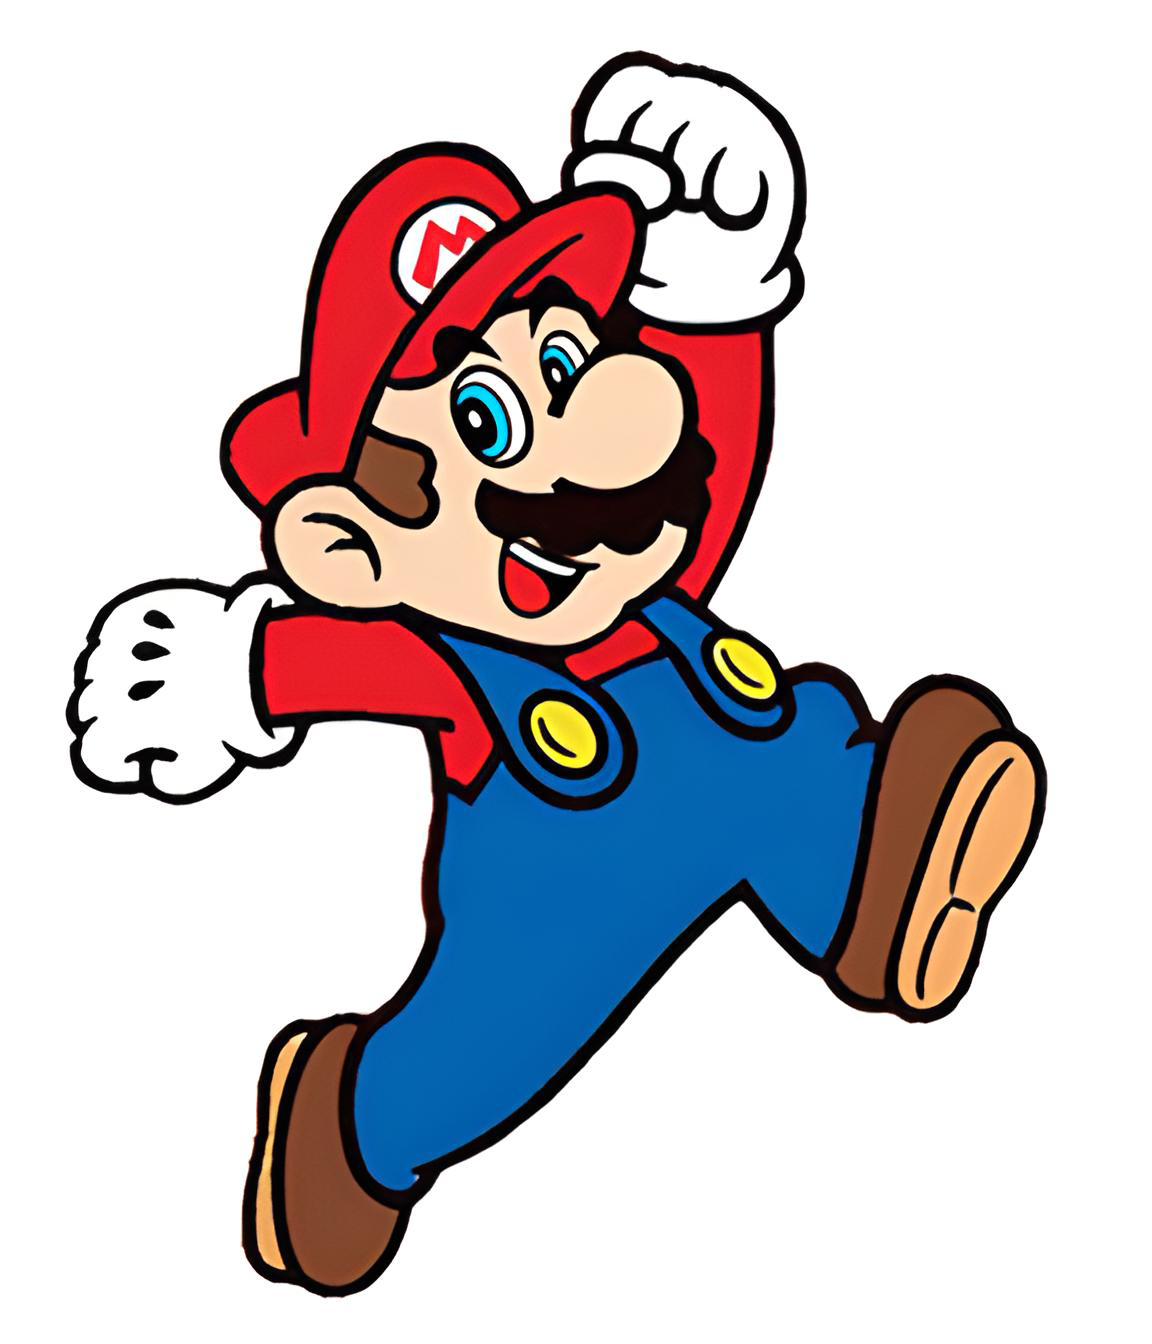 Super Mario Jumping www.plandetransformacion.unirioja.es